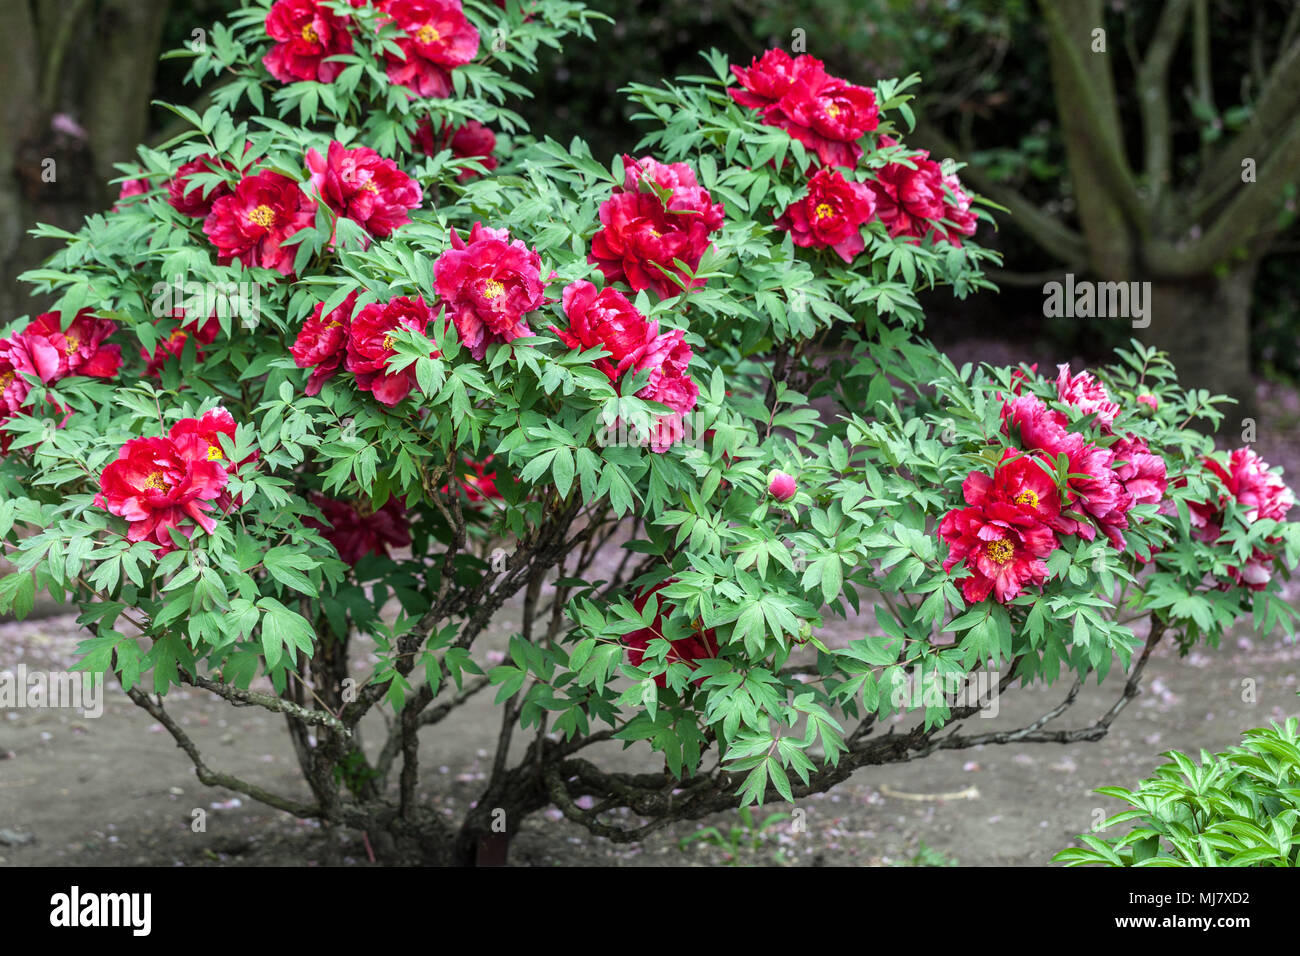 Paeonia Suffruticosa Japanese Tree Red Peony Red Peonies Stock Photo Alamy